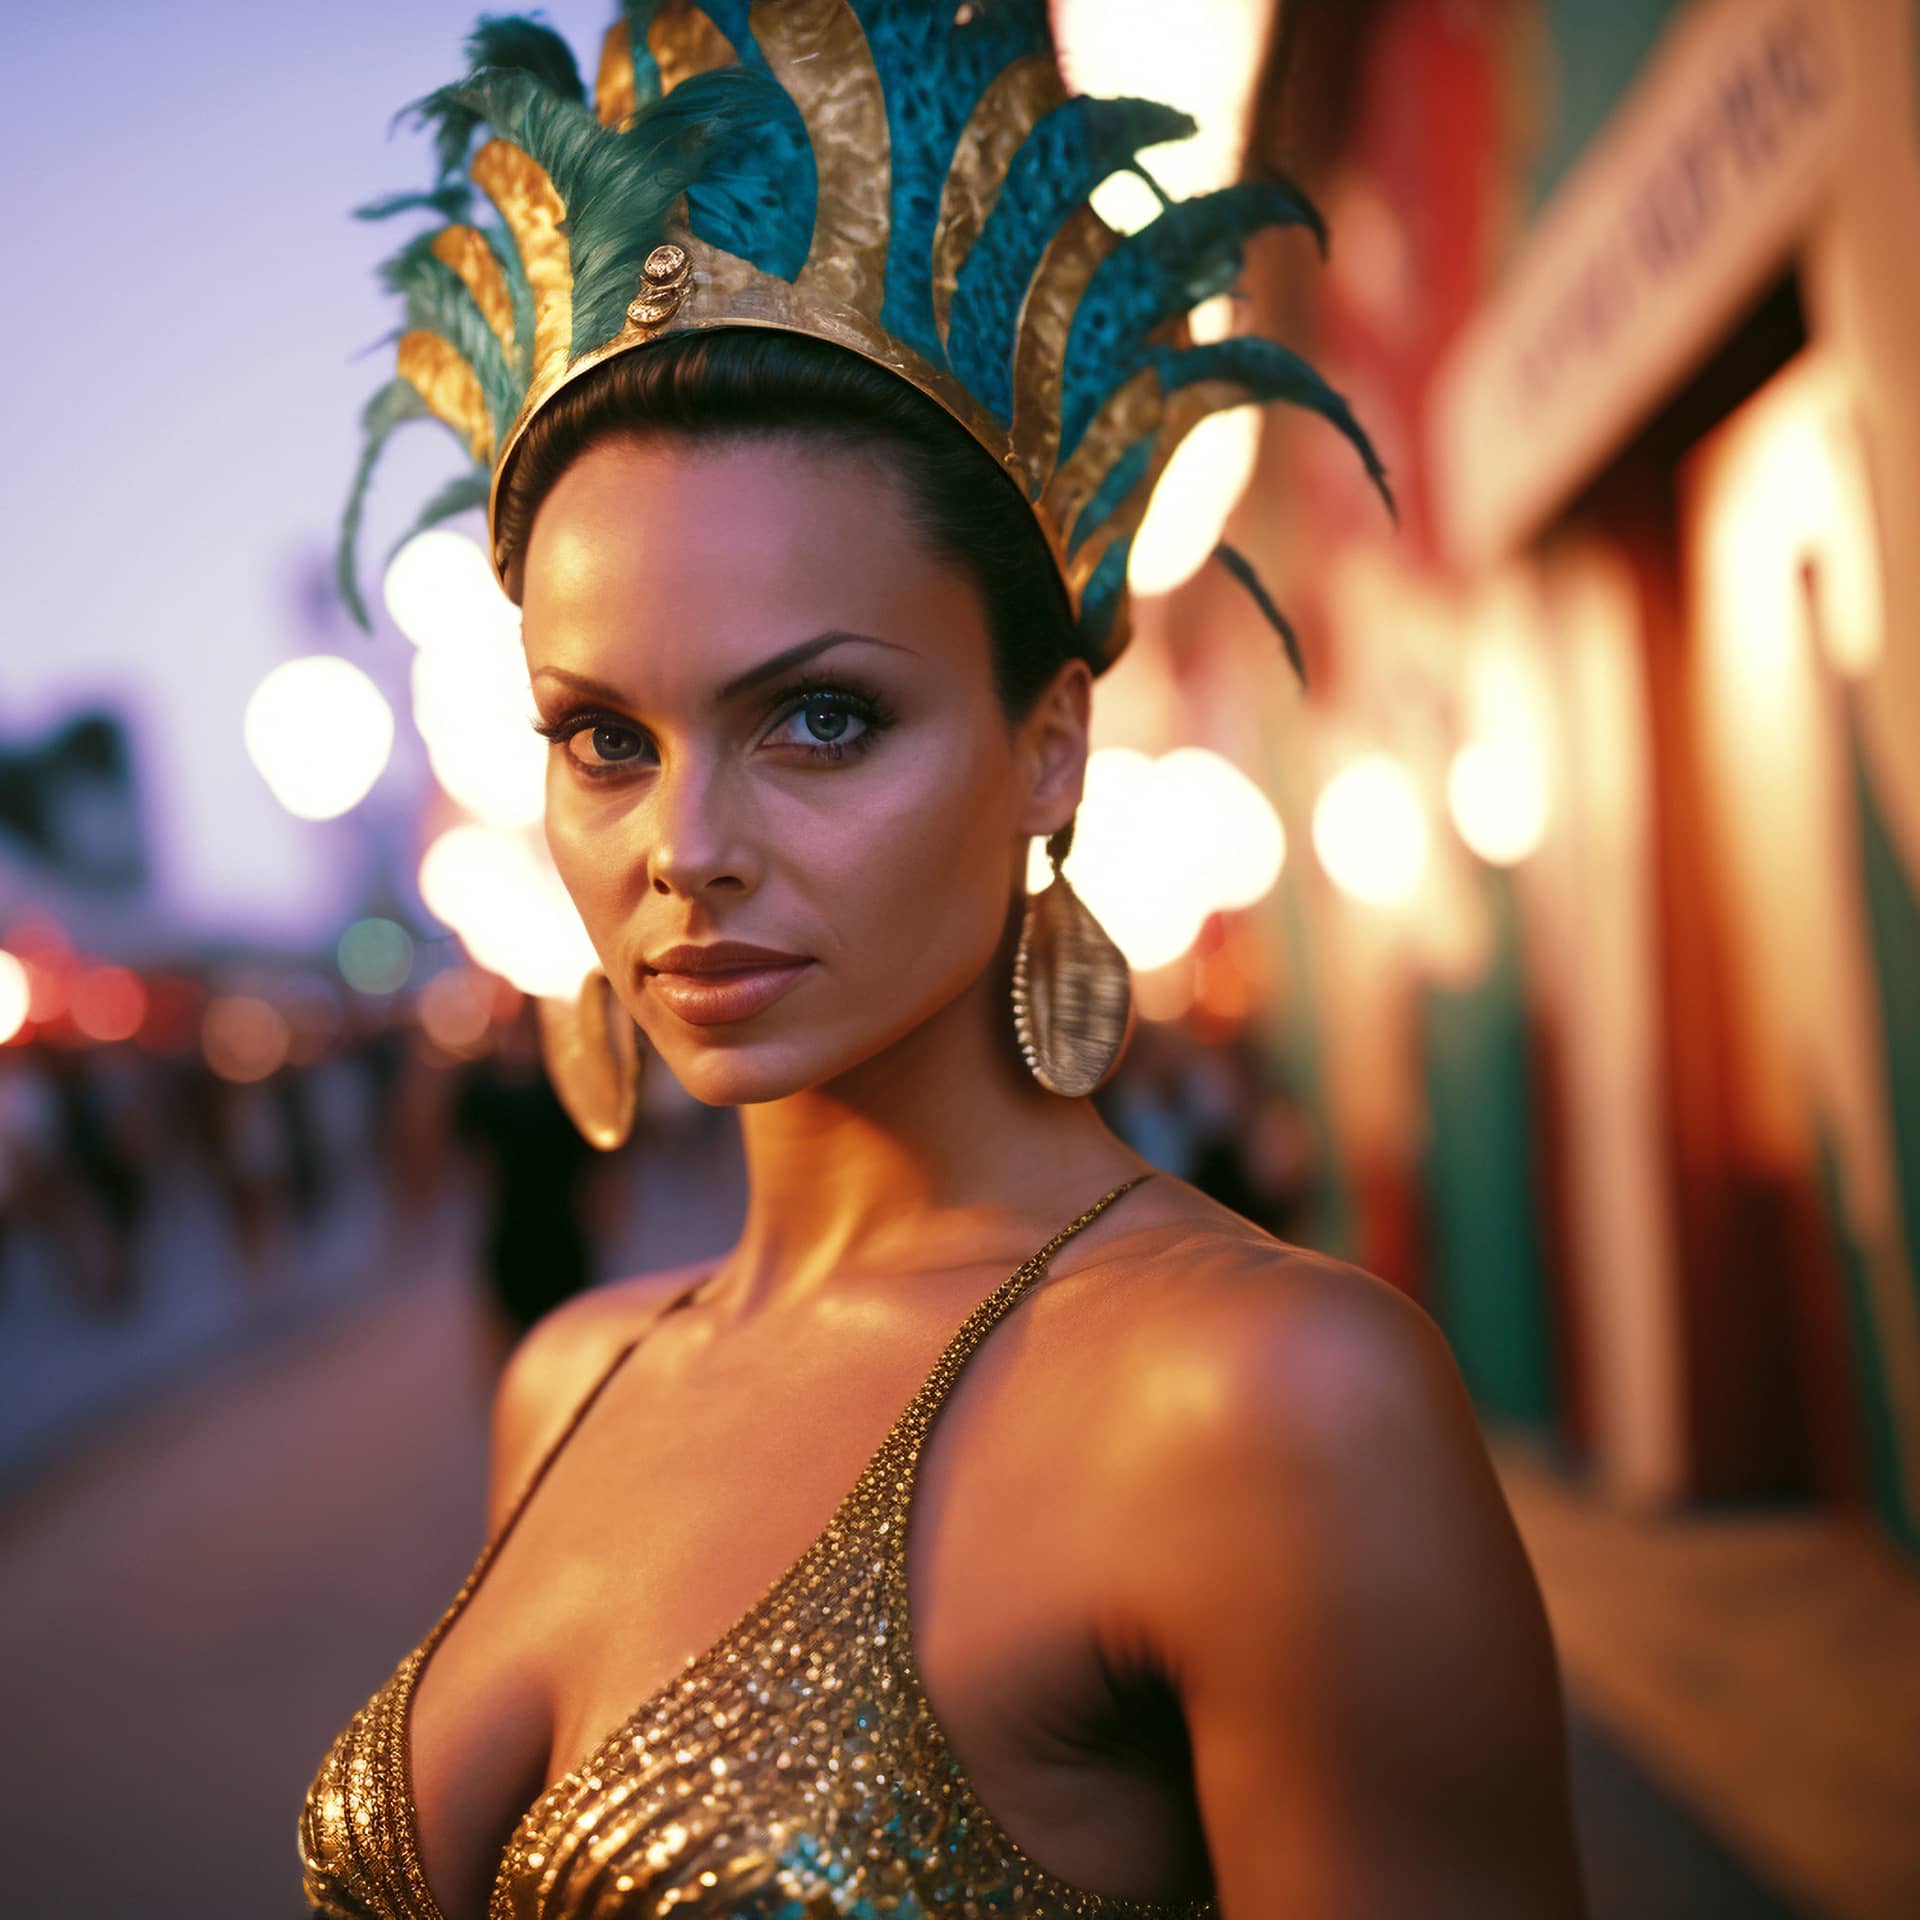 Beautiful girl bright colorful carnival costume woman samba dancer female profile picture